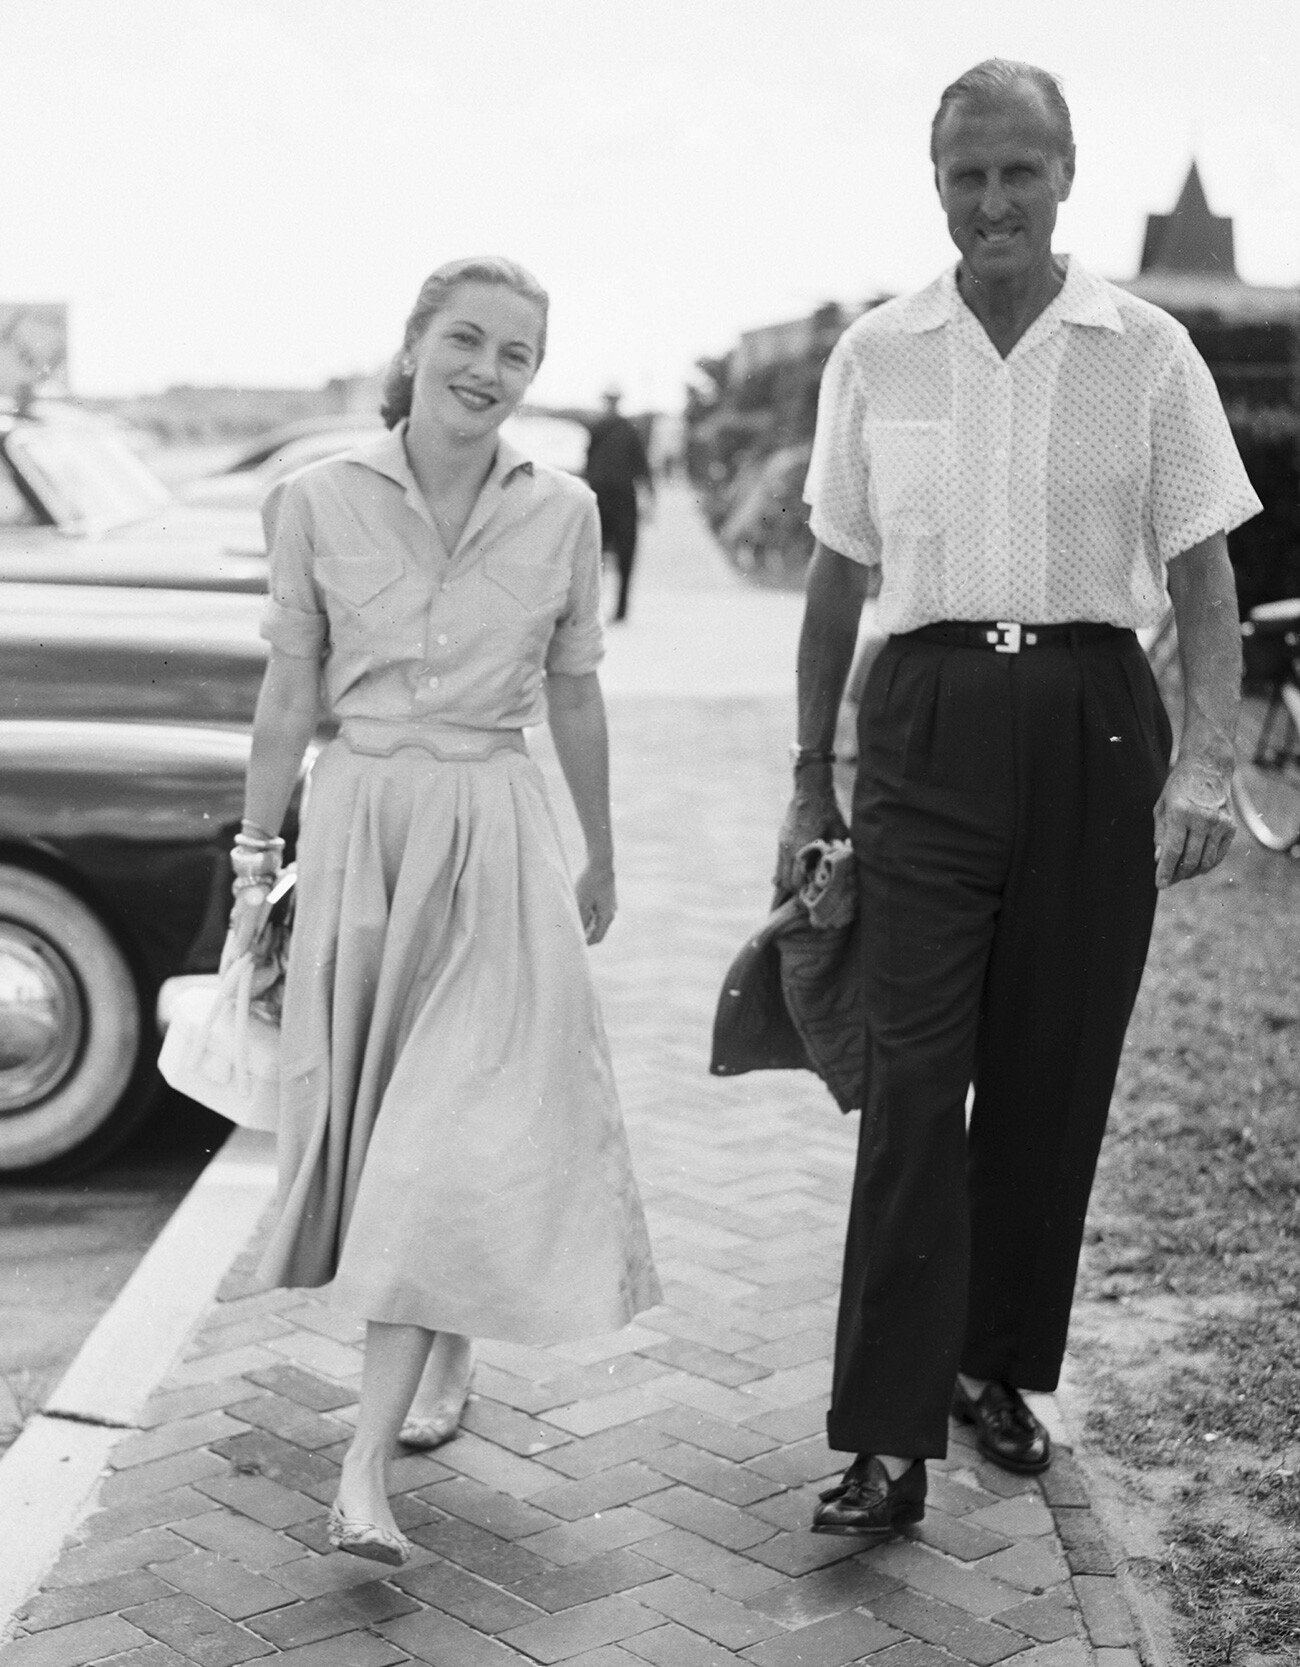 Serge Obolensky e l’attrice Joan Fontaine arrivano al The Southampton Beach Club di Southampton (Long Island), attorno al 1950

